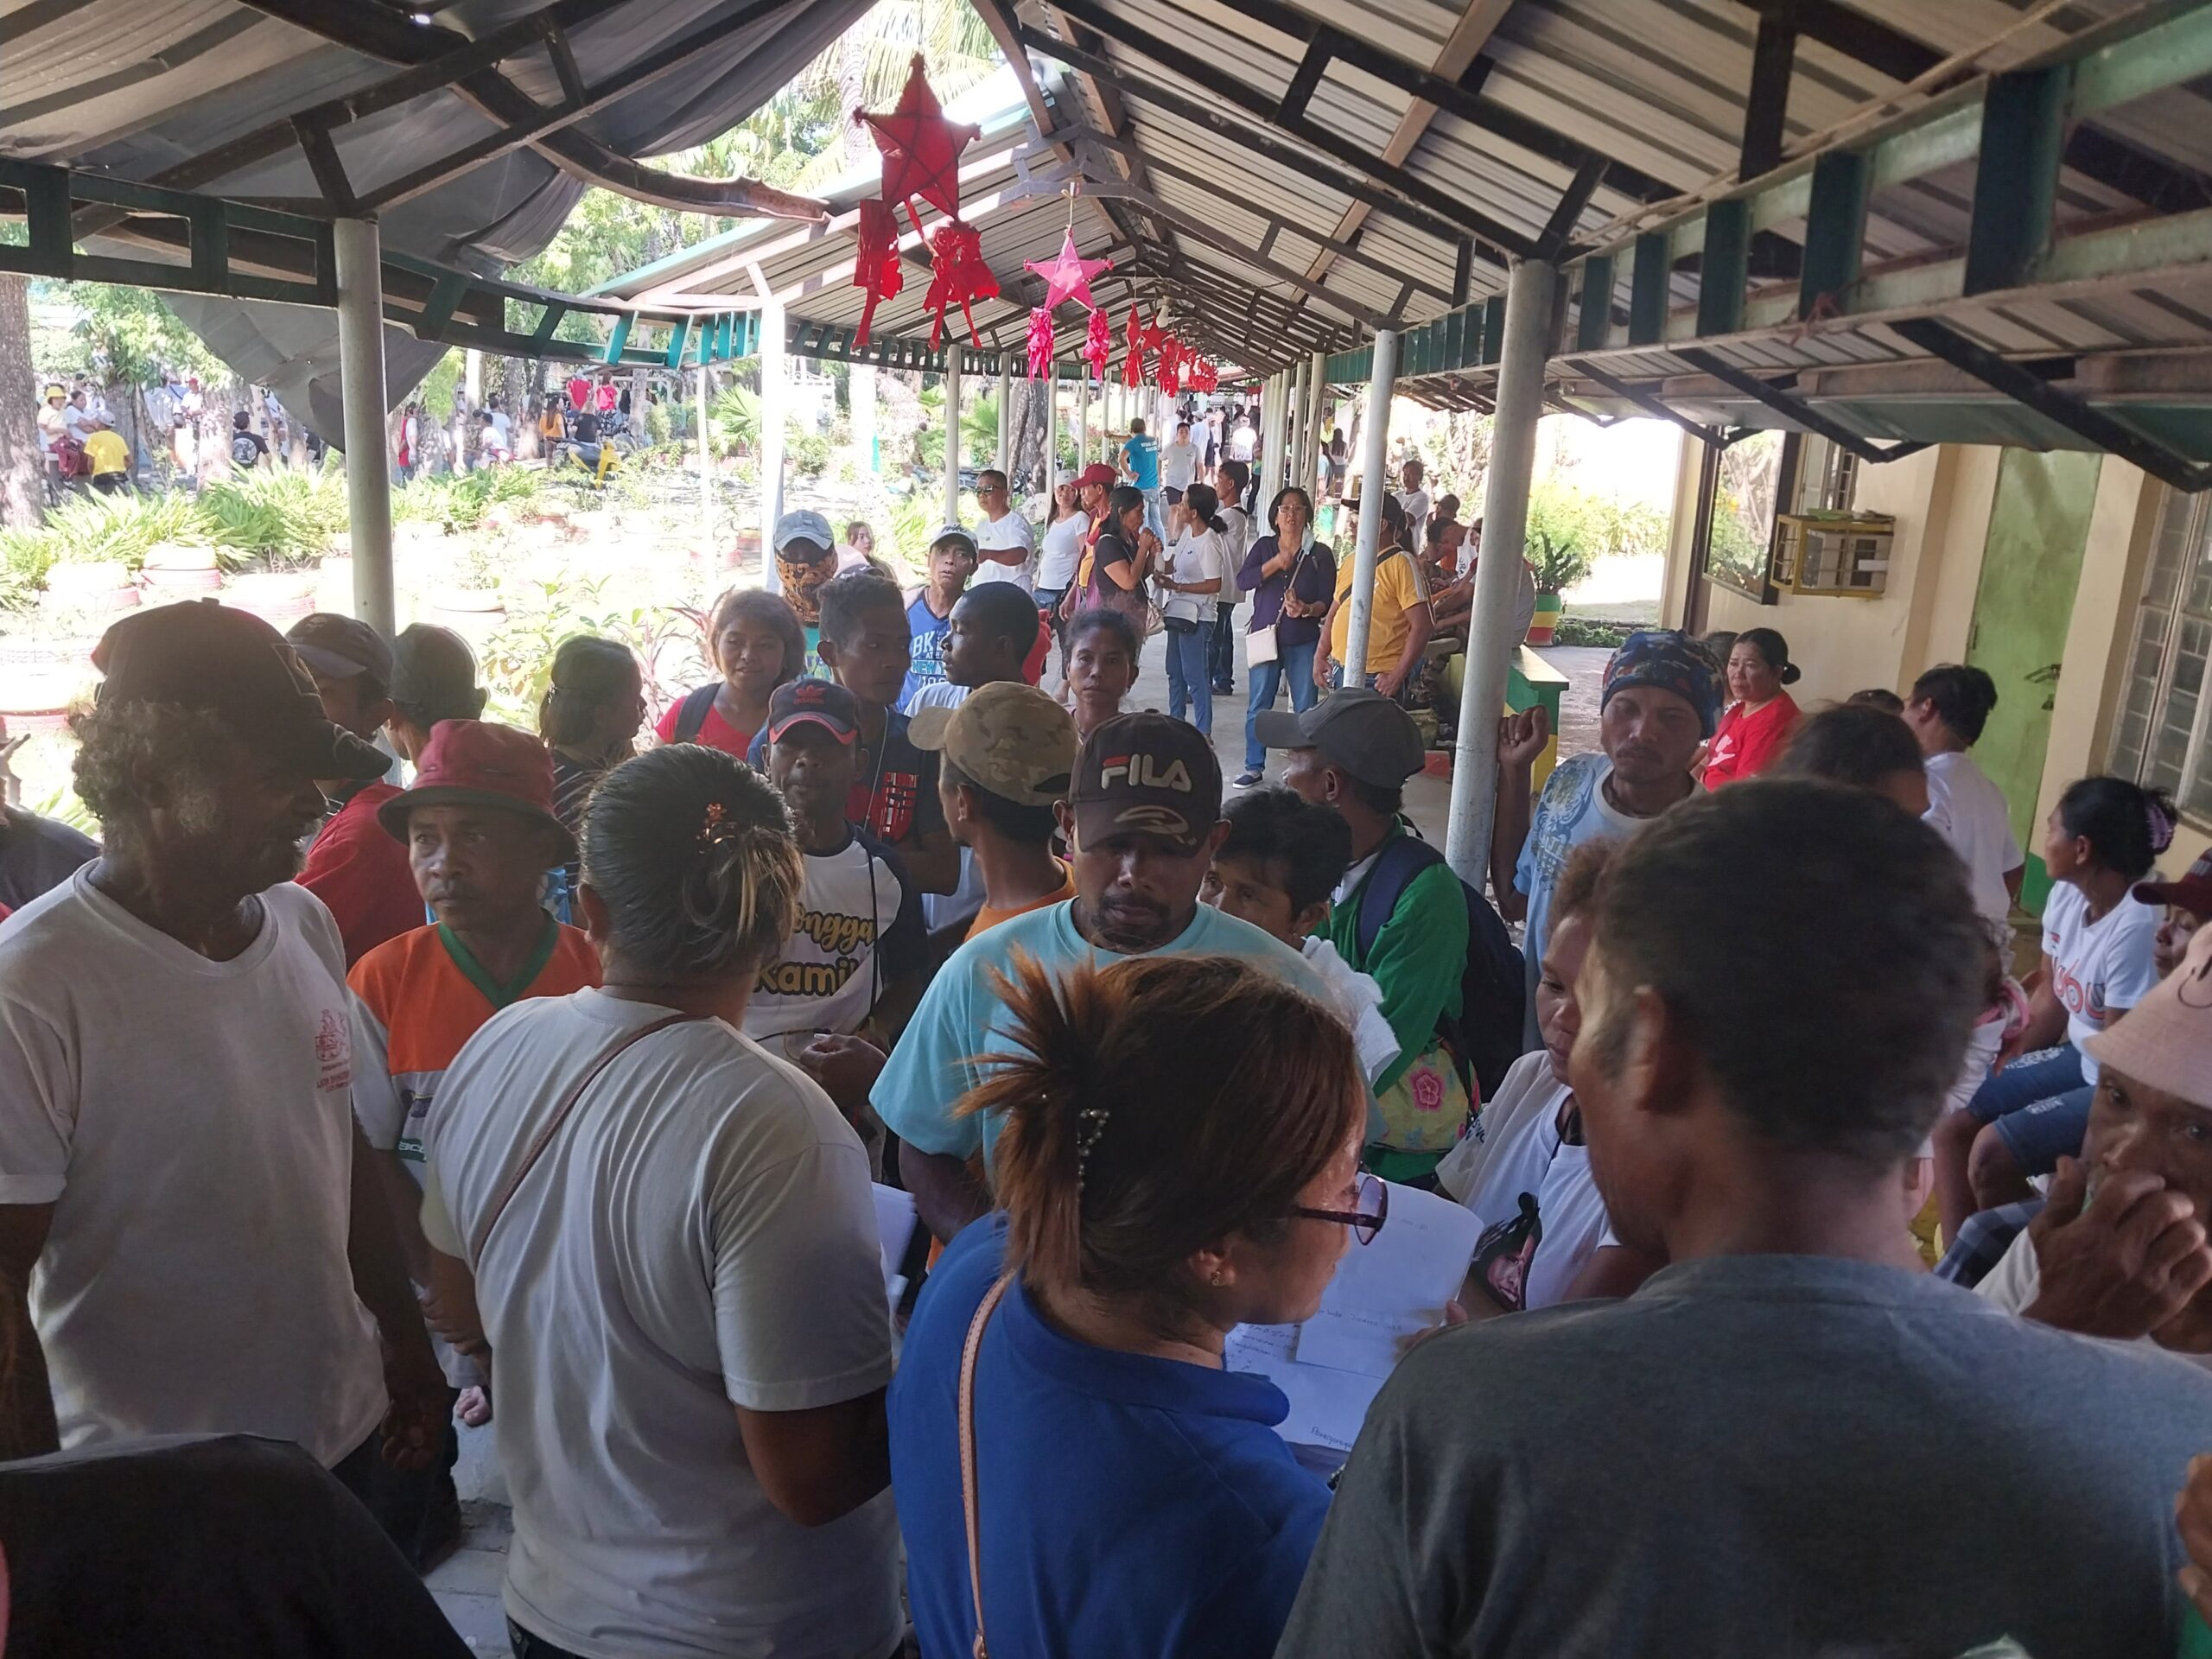 Dumagat tribal folk in Nueva Ecija travel for 4 hours to vote